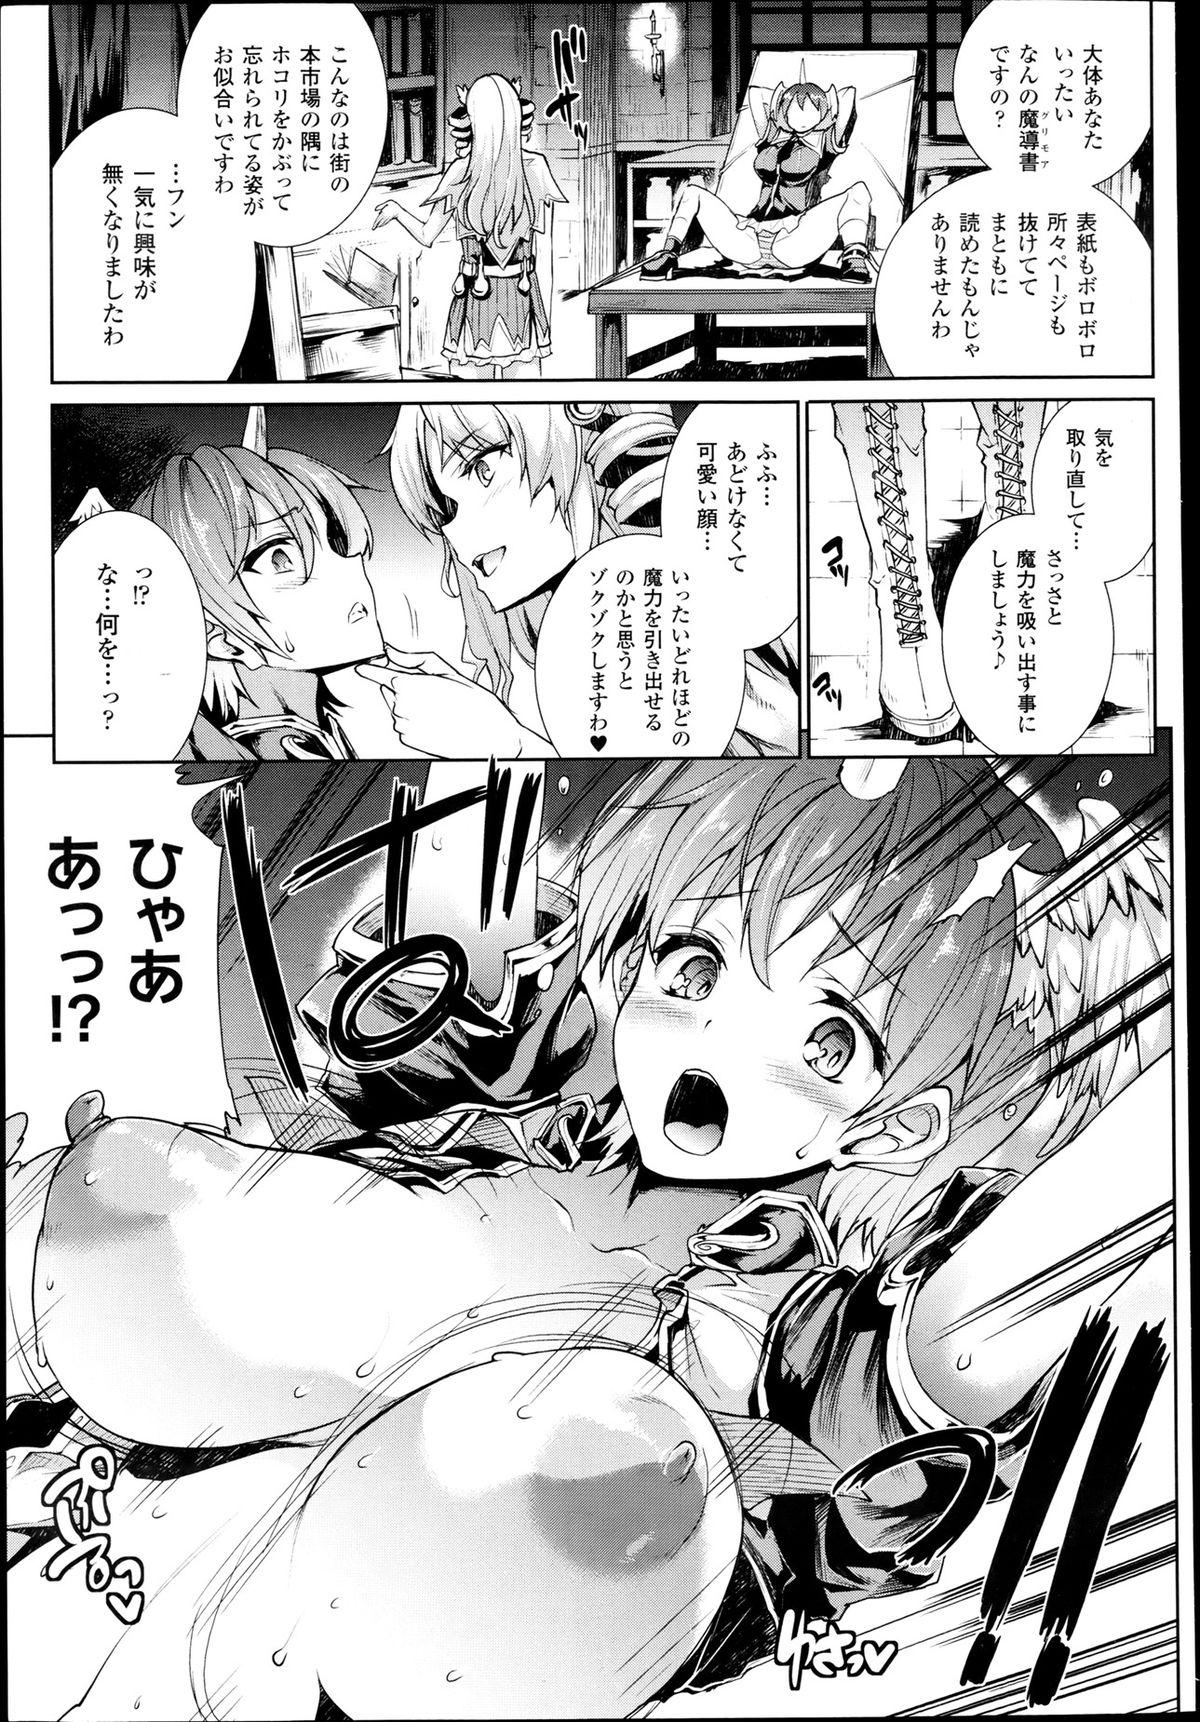 Ride [Erect Sawaru] Shinkyoku no Grimoire -PANDRA saga 2nd story- Ch 07-9.5 Teensnow - Page 11